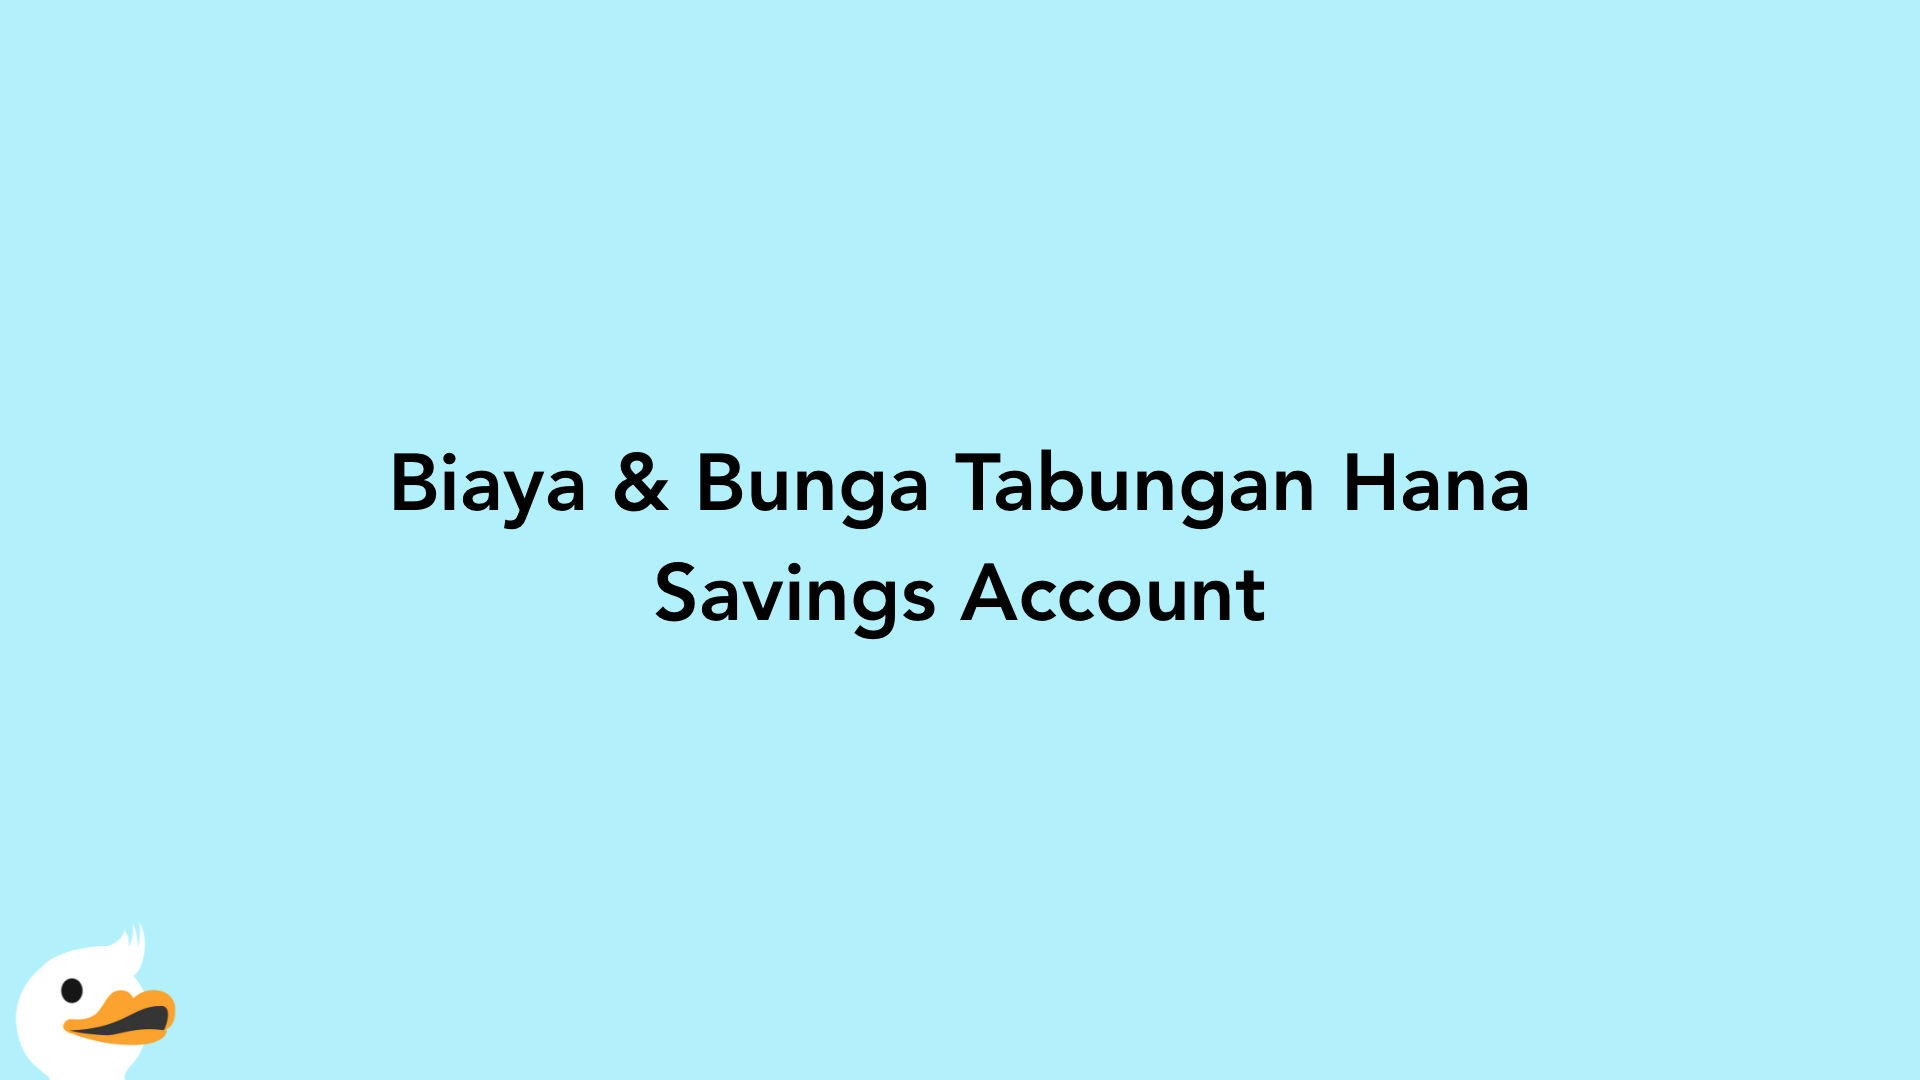 Biaya & Bunga Tabungan Hana Savings Account